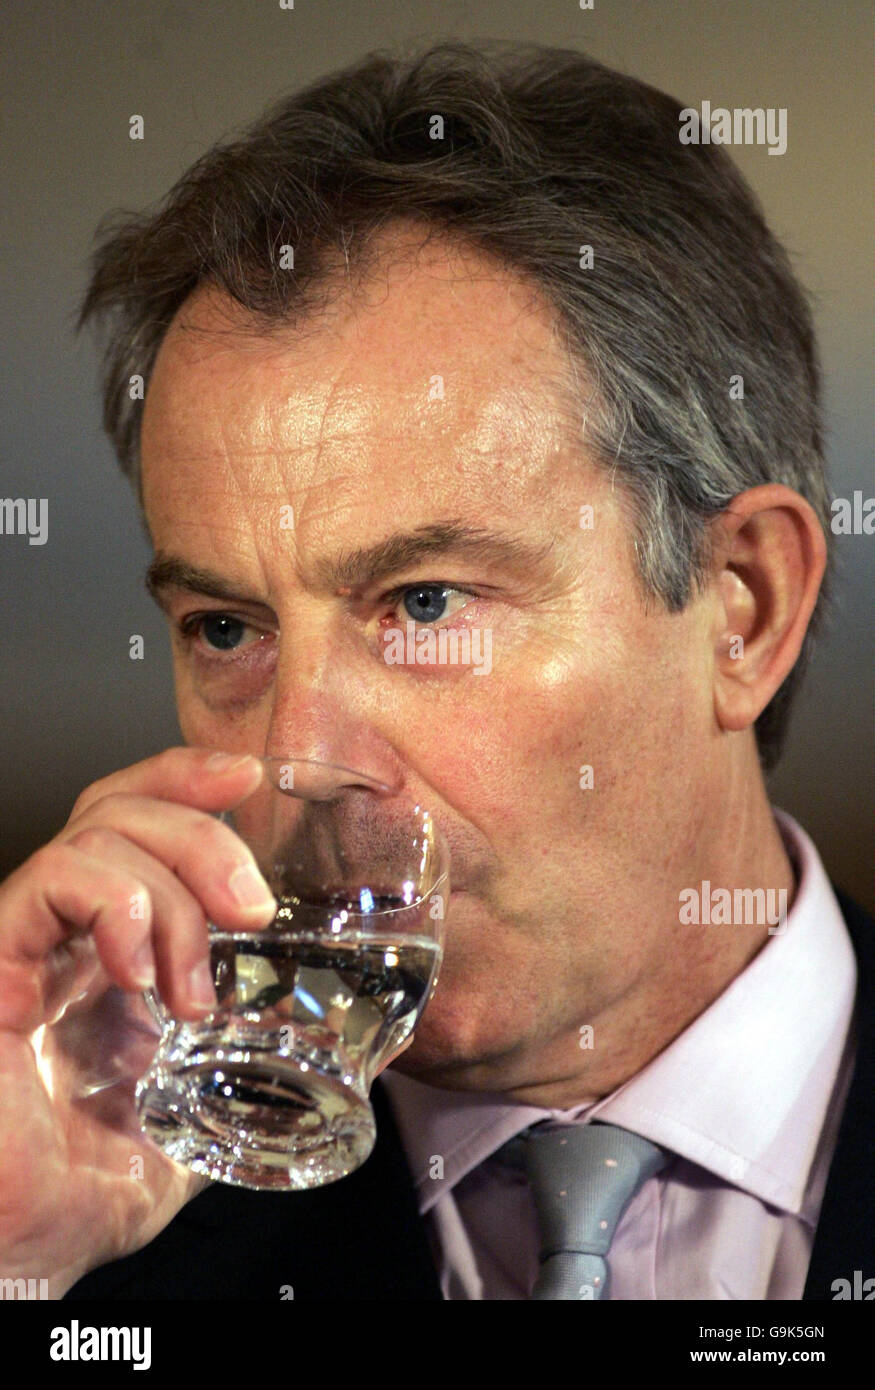 Le Premier ministre britannique Tony Blair prend un verre d'eau lors d'une  conférence de presse conjointe avec le président du Kazakhstan Nursultan  Nazarbayev, à l'intérieur du 10 Downing Street à Londres Photo